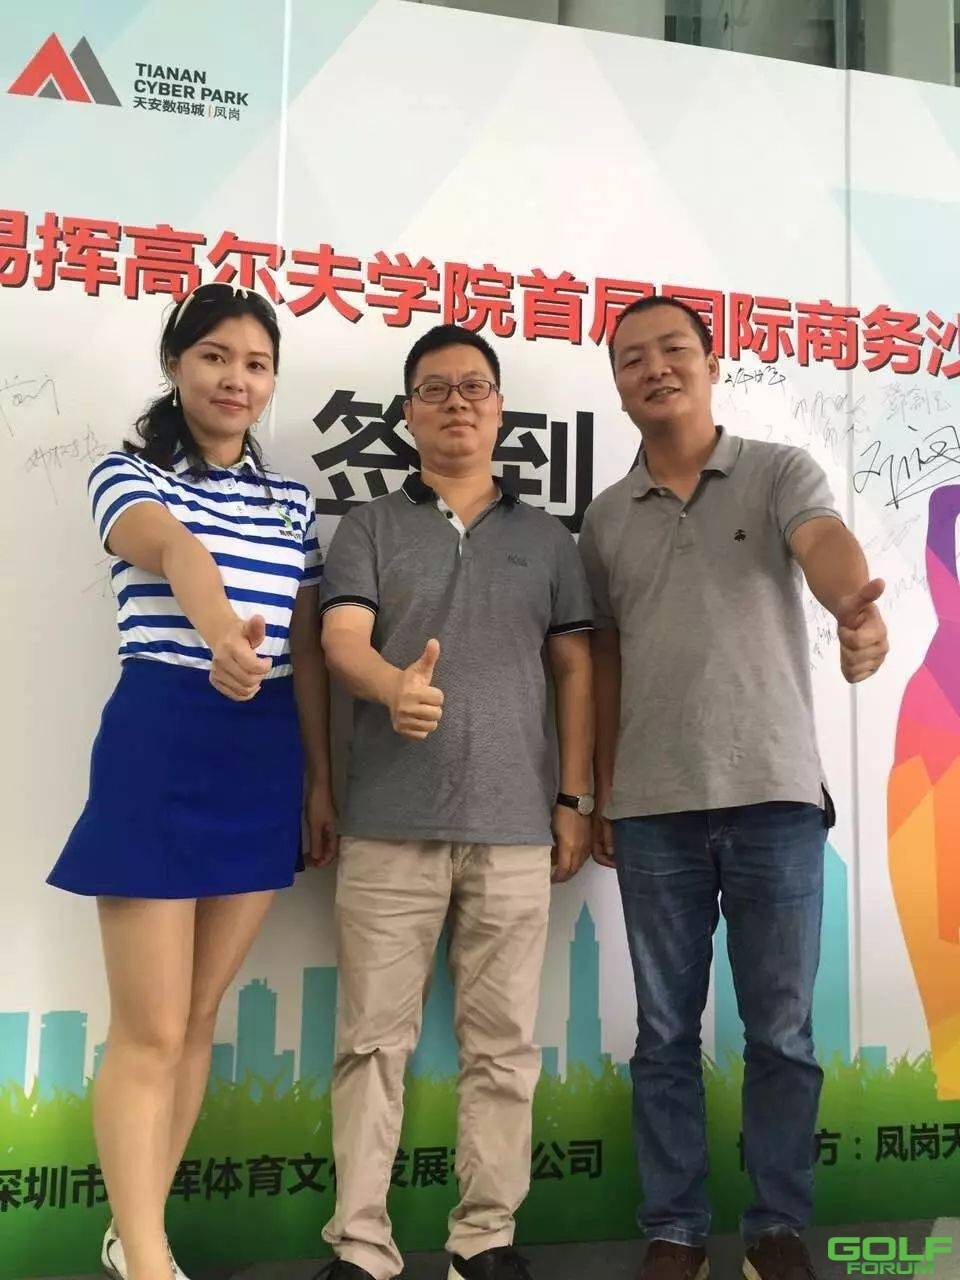 深圳大埔高尔夫球队出席易挥高尔夫沙龙活动，感受易挥新能量 ...